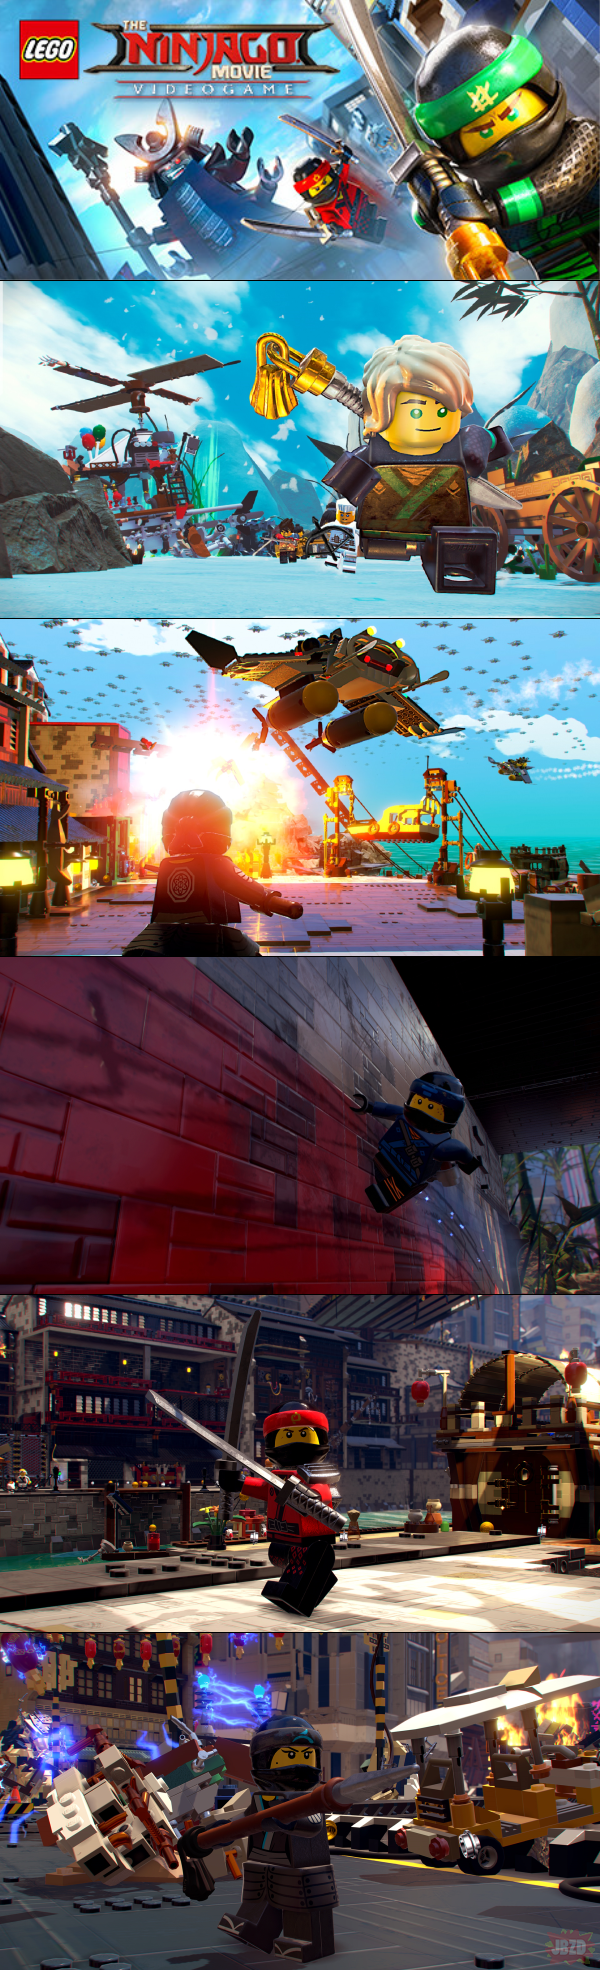 The LEGO NINJAGO Movie Video Game za darmo na PC (steam), Xbox One i Playstation 4